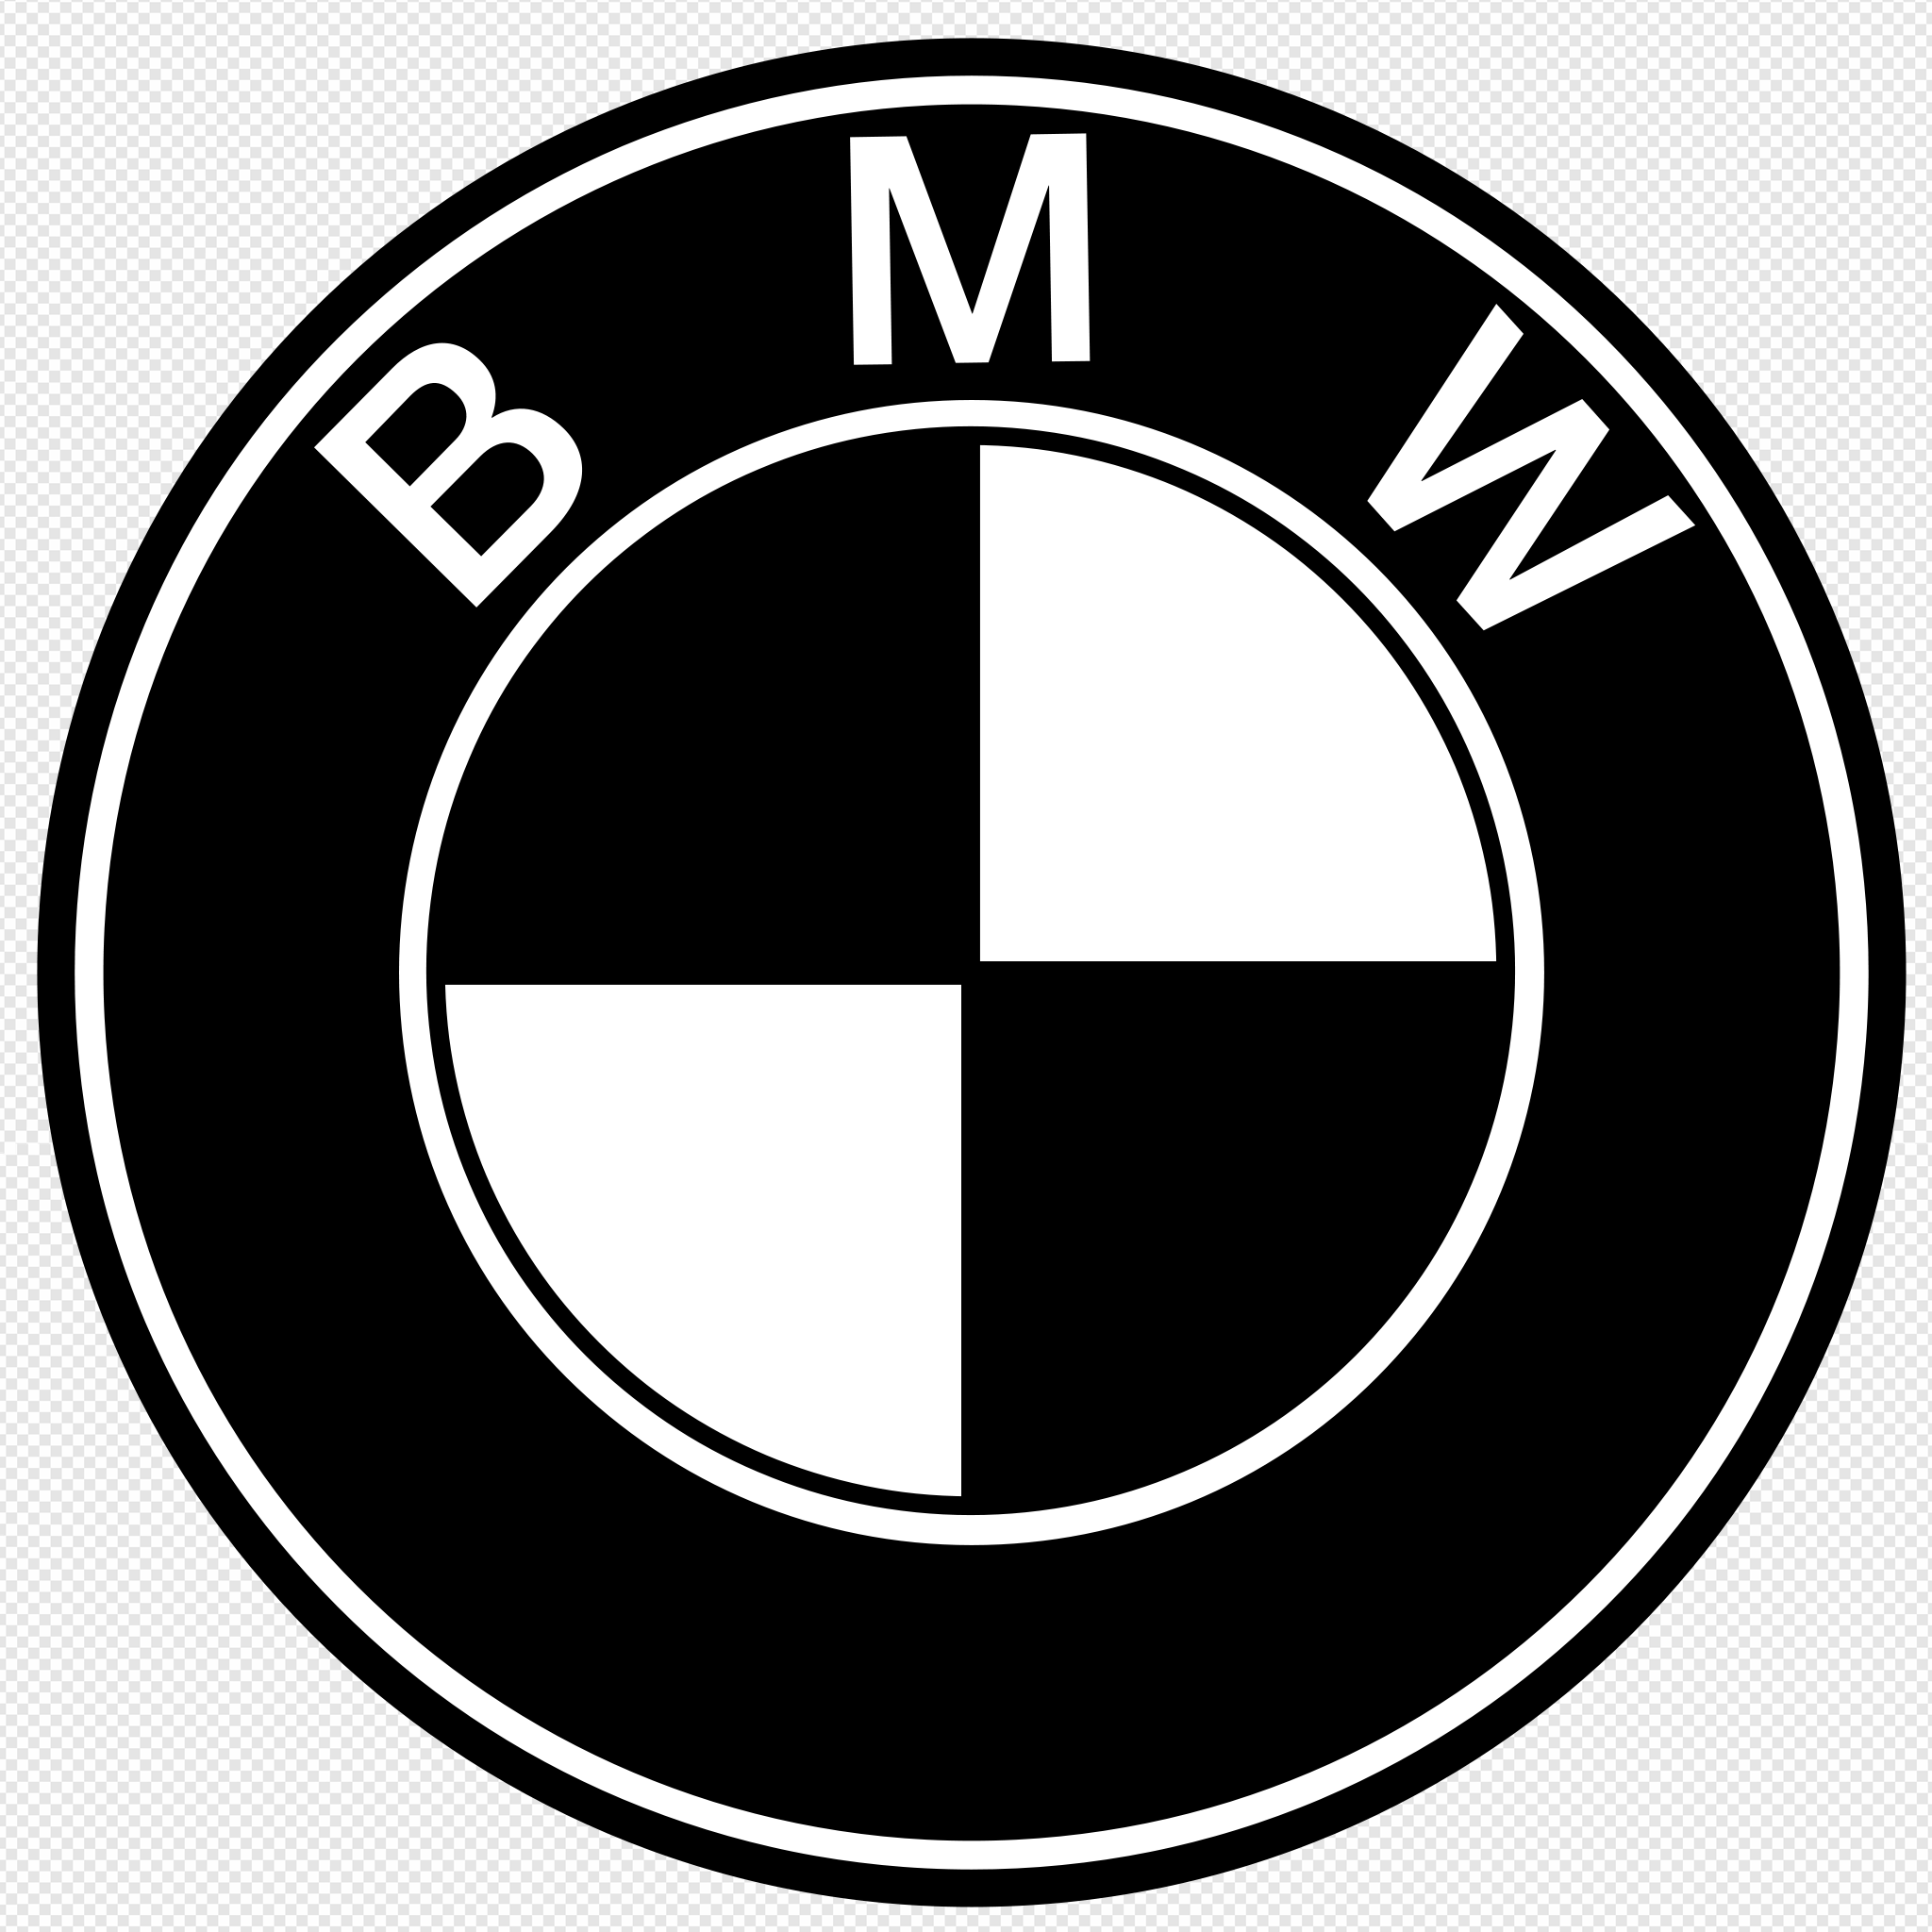 How to draw the BMW M logo - Wie zeichnet man das BMW M logo - YouTube